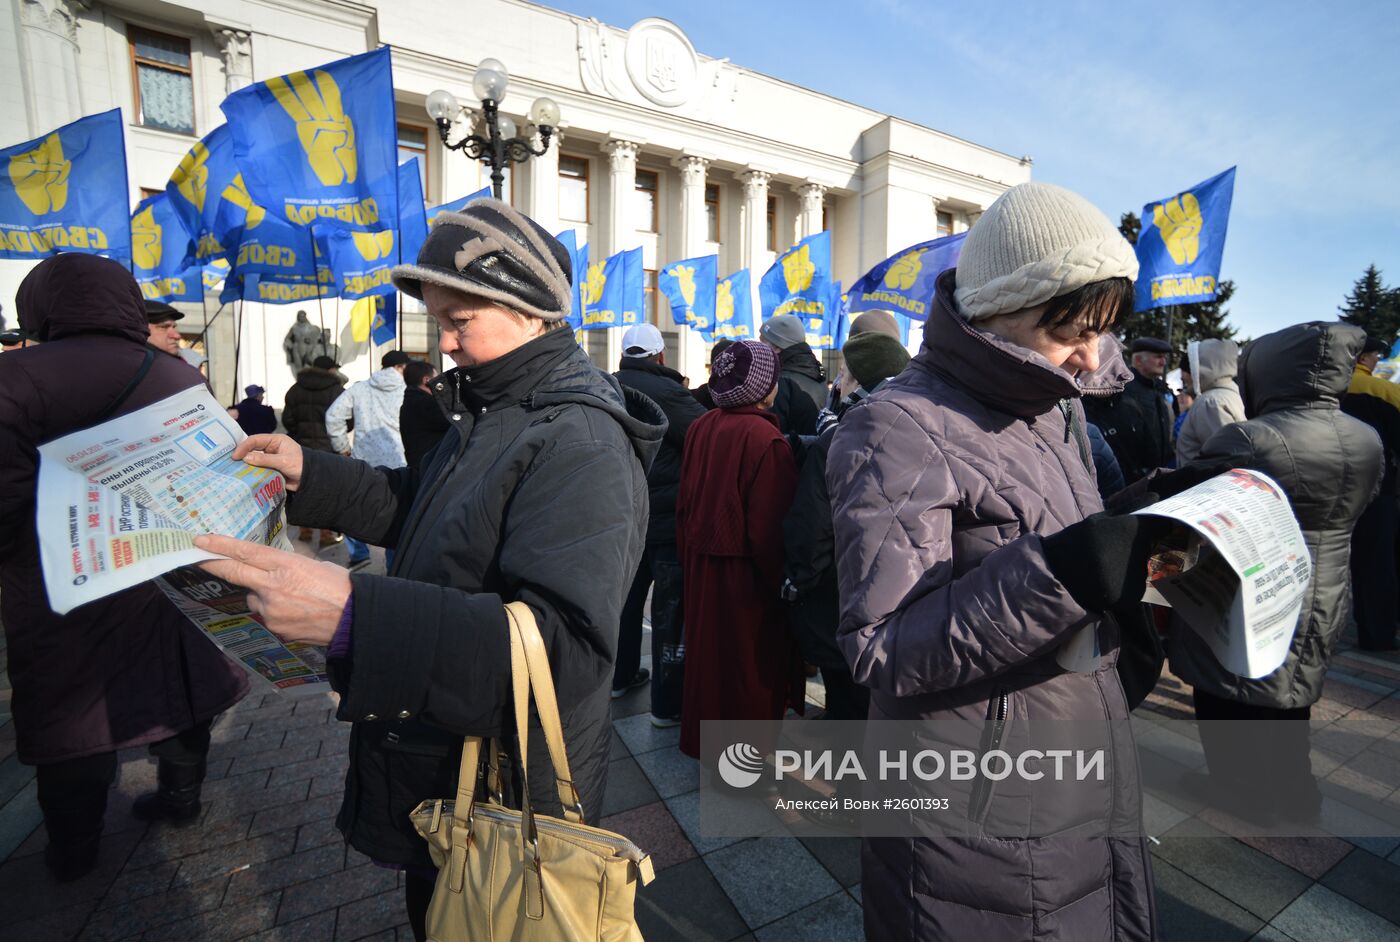 Митинг сторонников партии "Свобода" в Киеве